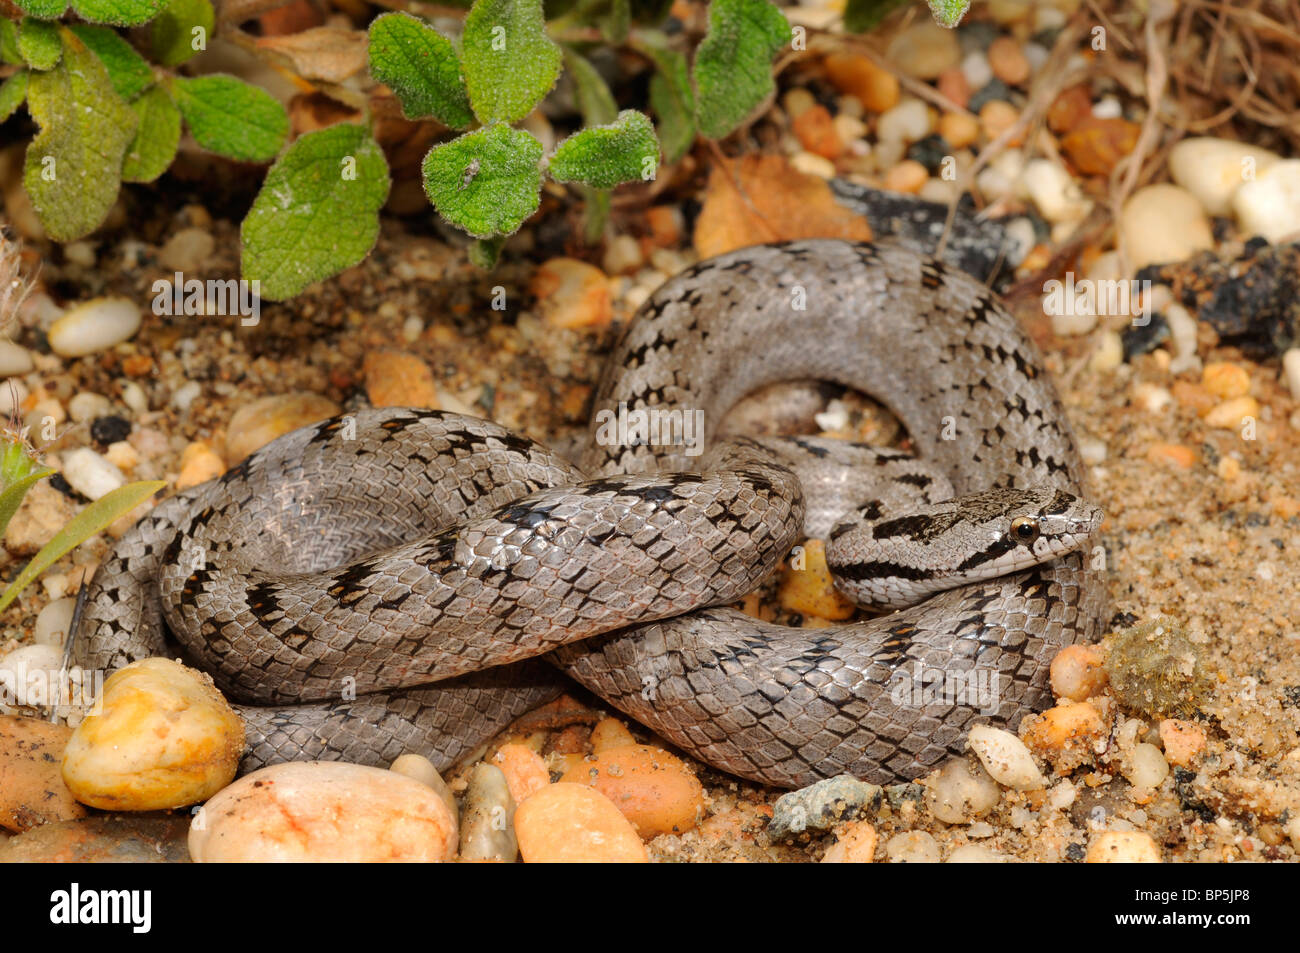 A sud di serpente liscio, Bordeaux snake (Coronella girondica) arrotolato nel suo biotopo naturale, Spagna, Andalusia, Donana Nationa Foto Stock